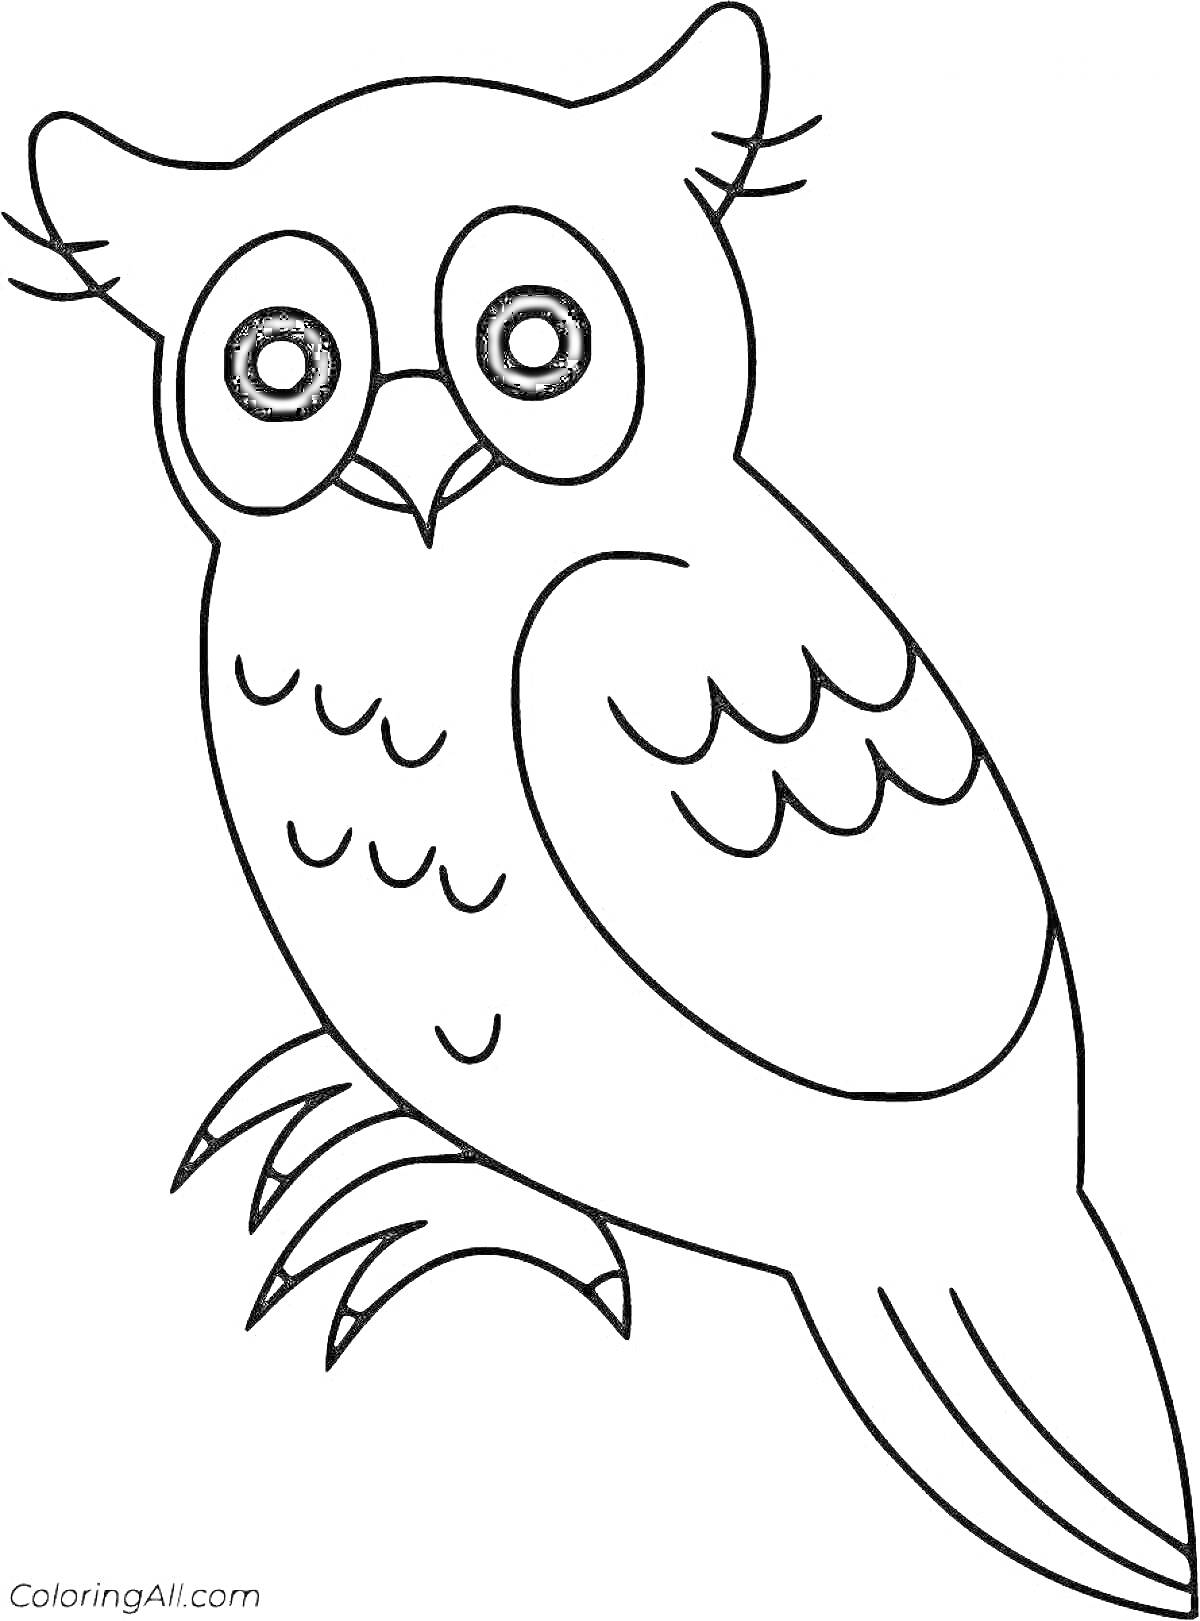 Раскраска Филин с ярко выраженными глазами, декоративными перьями на крыльях и хвостом